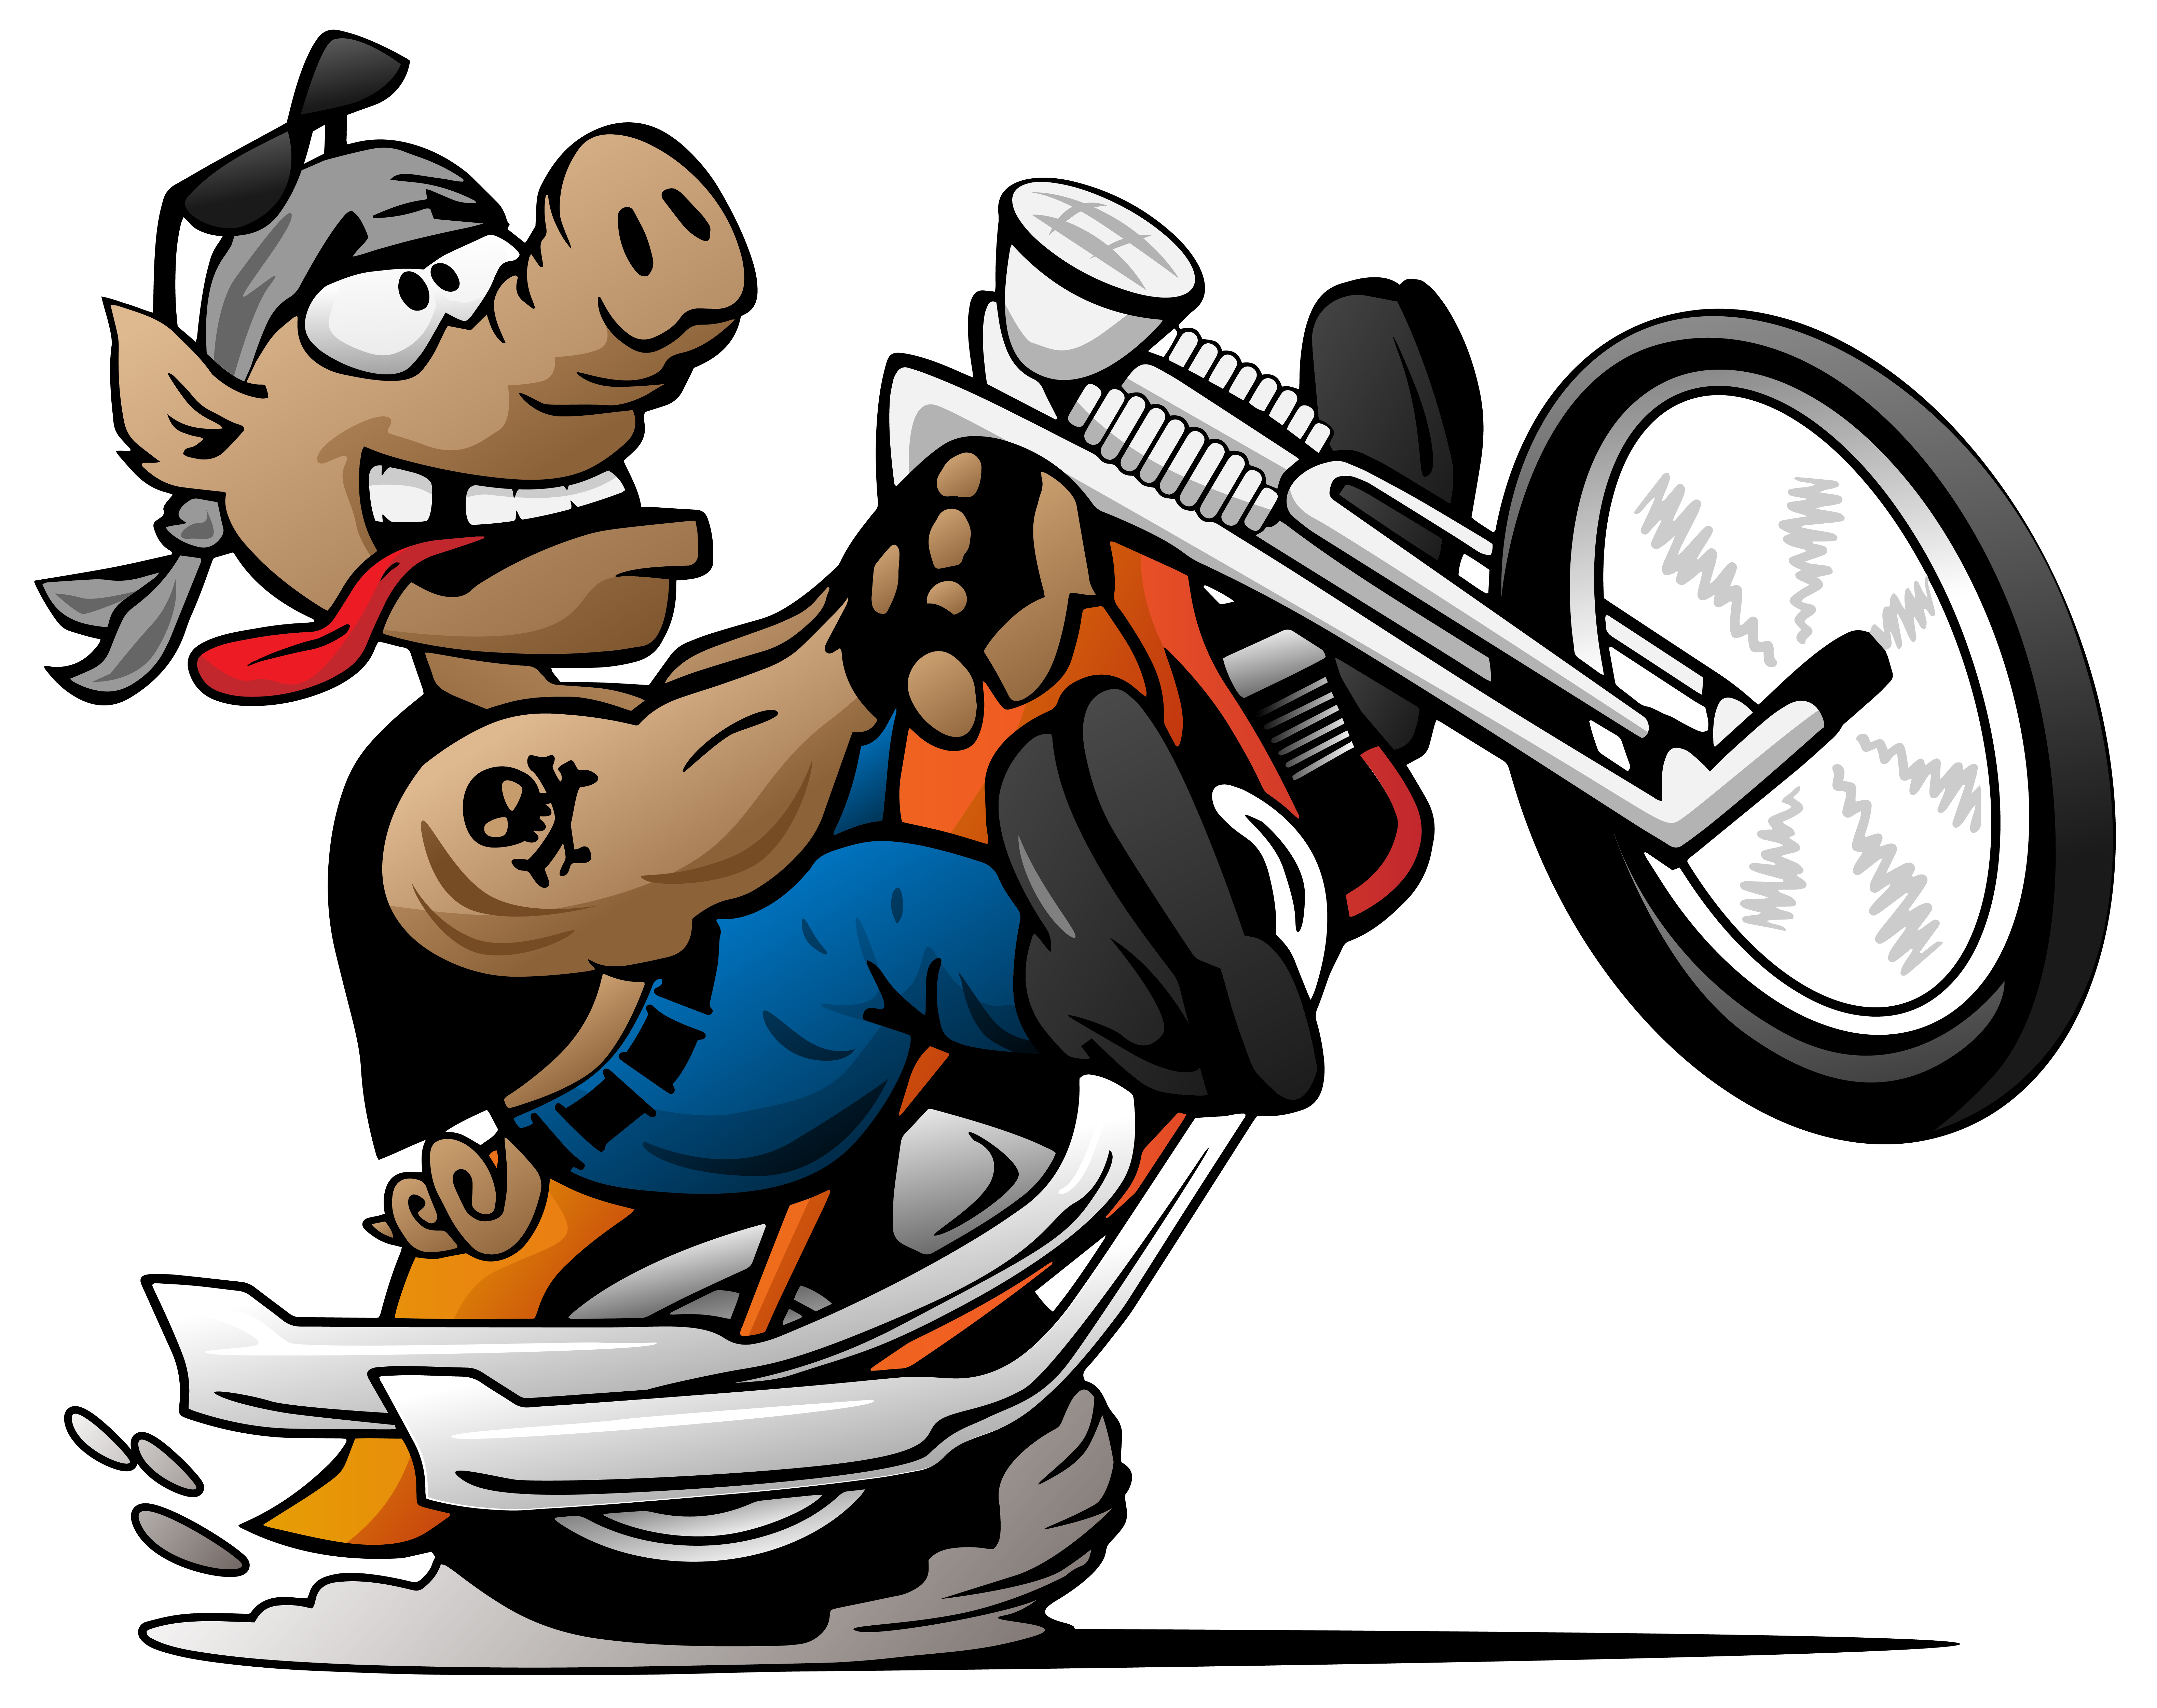 Porco de motociclista, estourando um wheelie em uma ilustração em vetor  motocicleta dos desenhos animados 373000 Vetor no Vecteezy